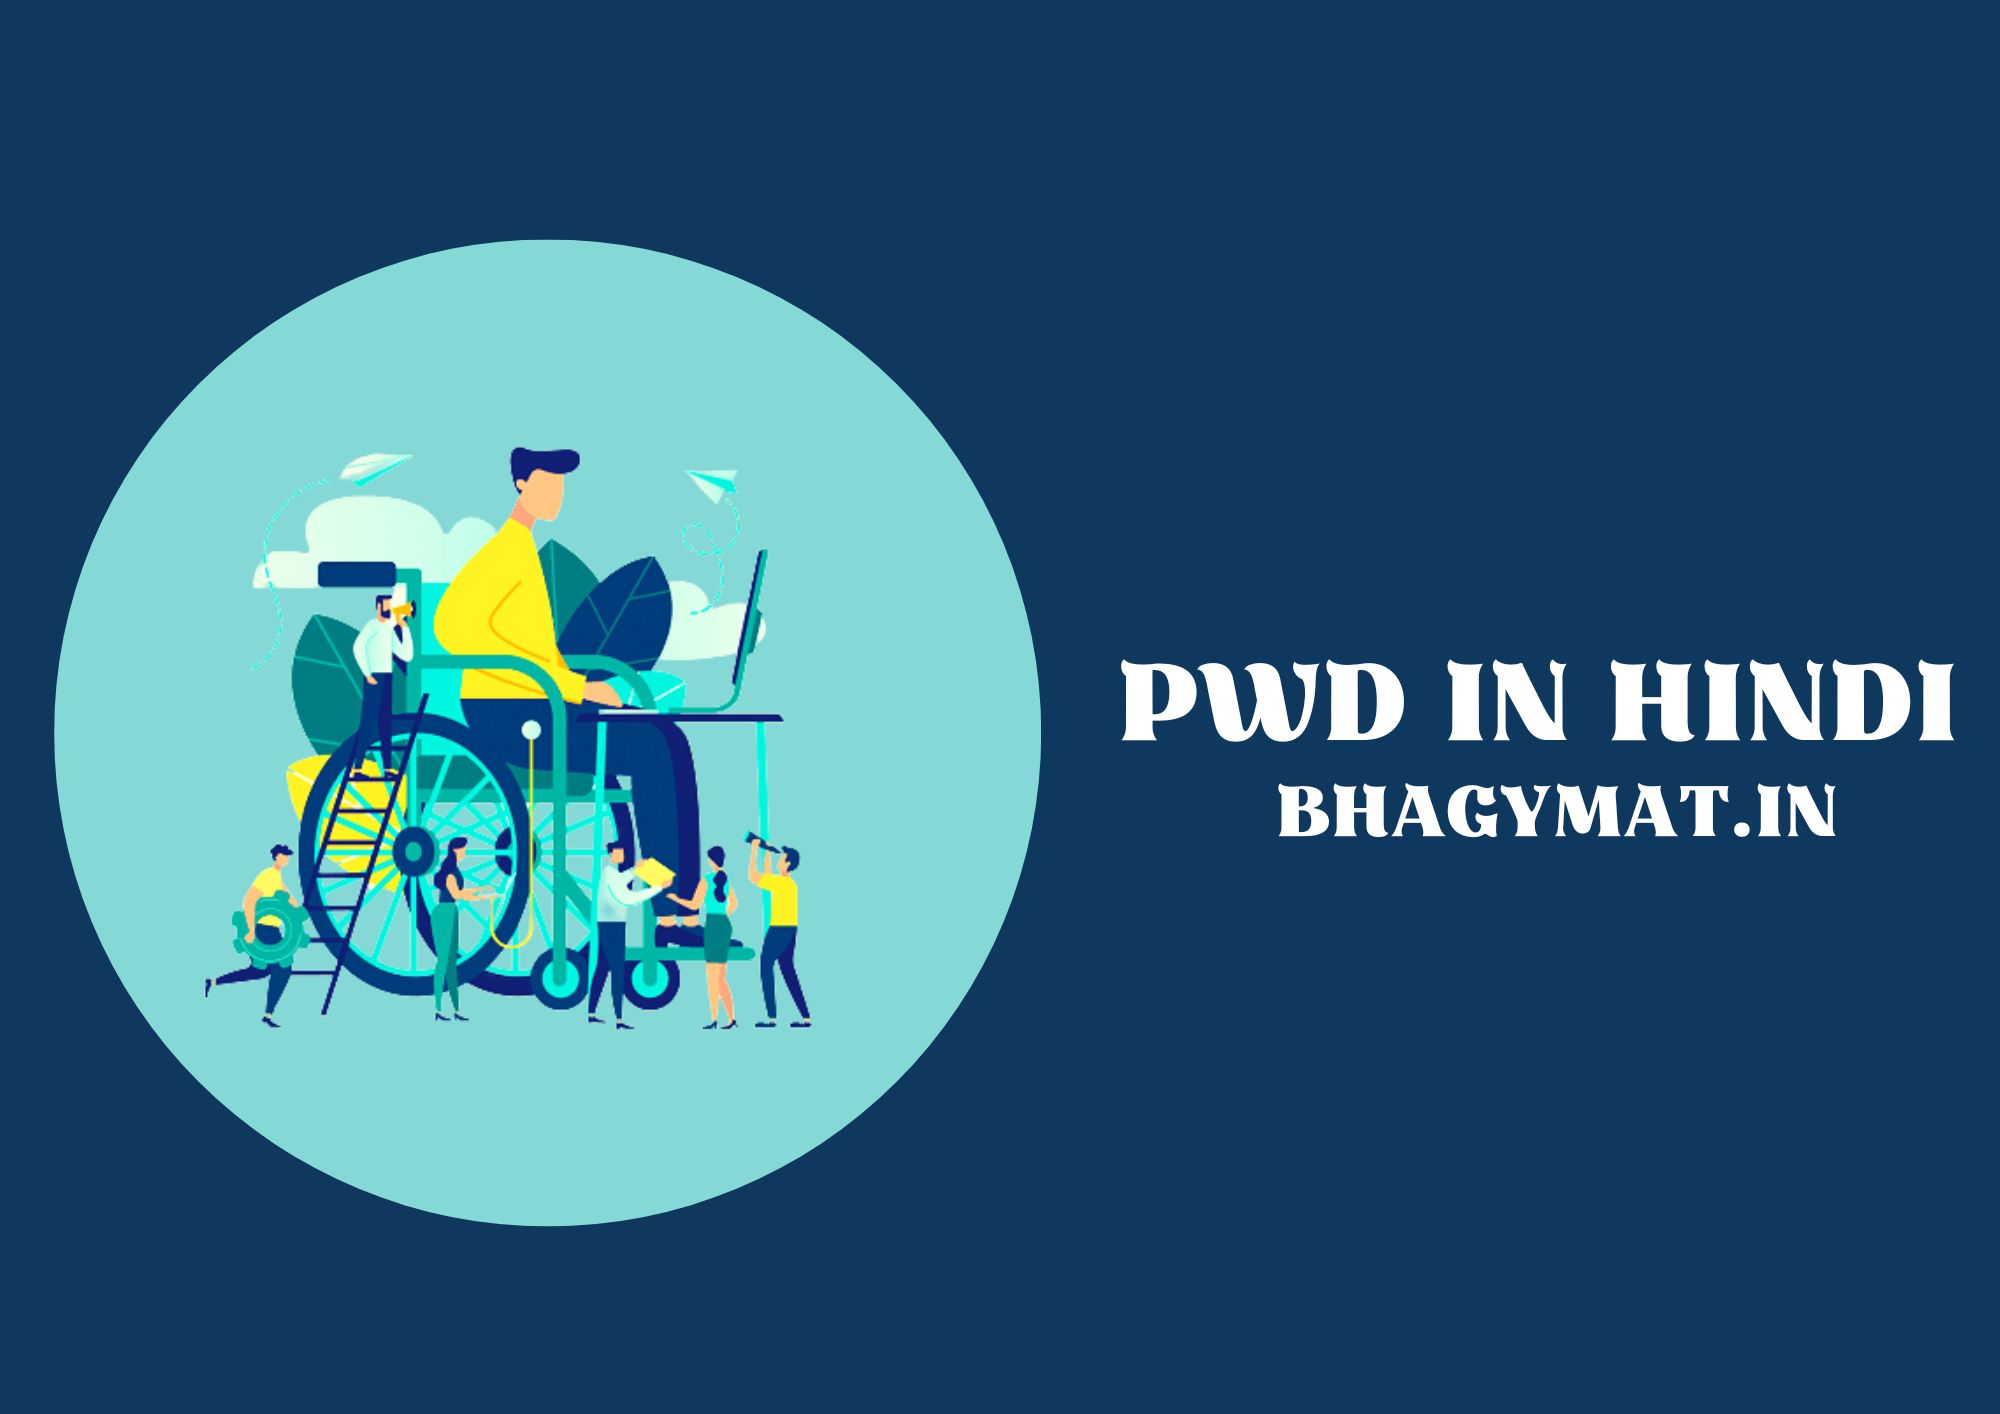 पीडब्ल्यूडी का फुल फॉर्म क्या है? (Full Form Of PWD In Hindi) - PWD Kya Hota Hai In Hindi - PWD Ka Full Form Kya Hai In Hindi